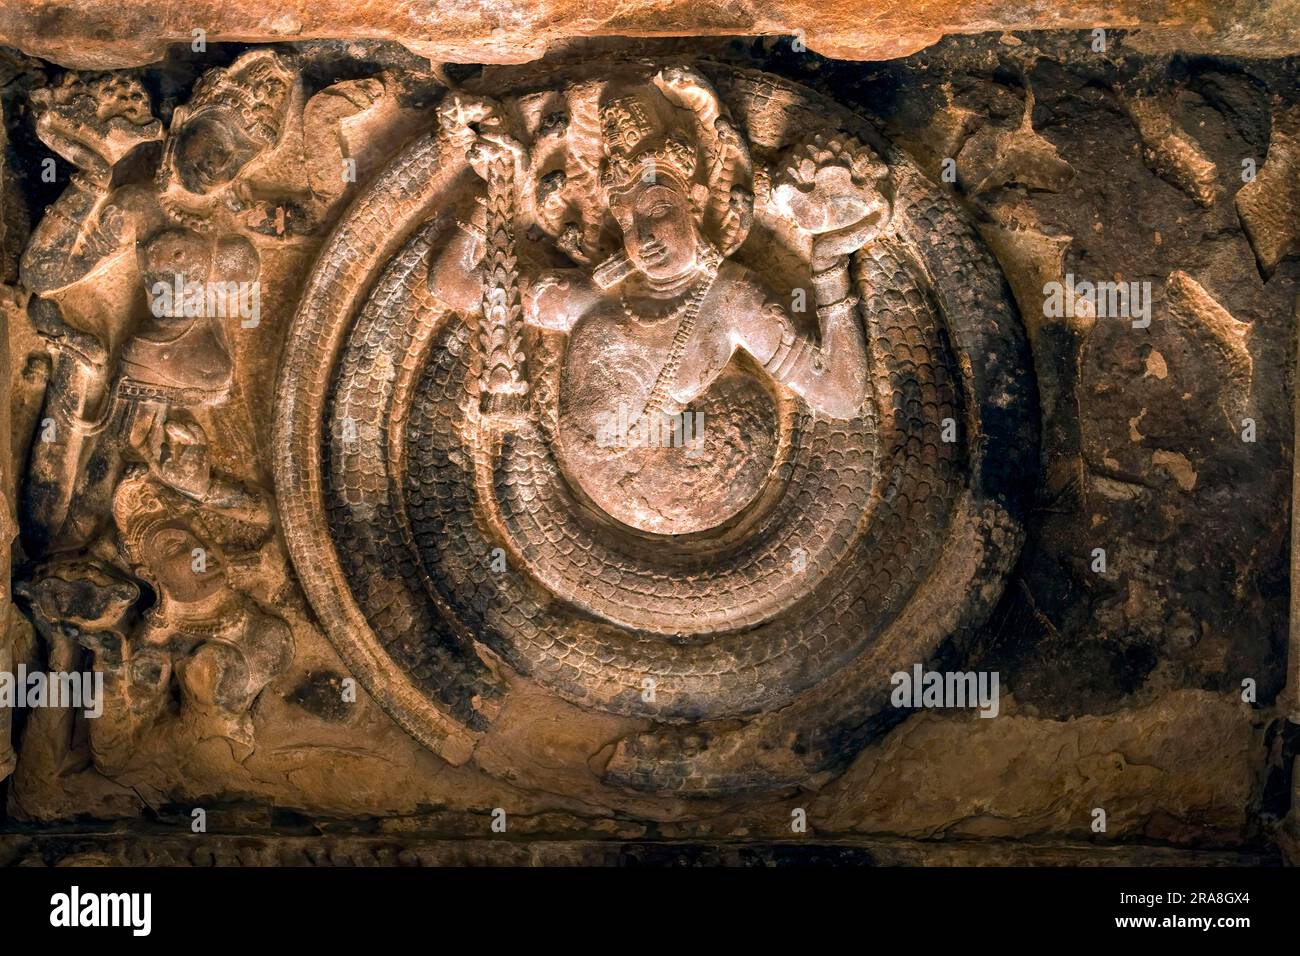 Un panneau de plafond dans la mandapa représentant une naga avec un corps serpent enroulé dans le temple de la forteresse de Durga, Aihole, Karnataka, Inde du Sud, Inde, Asie Banque D'Images